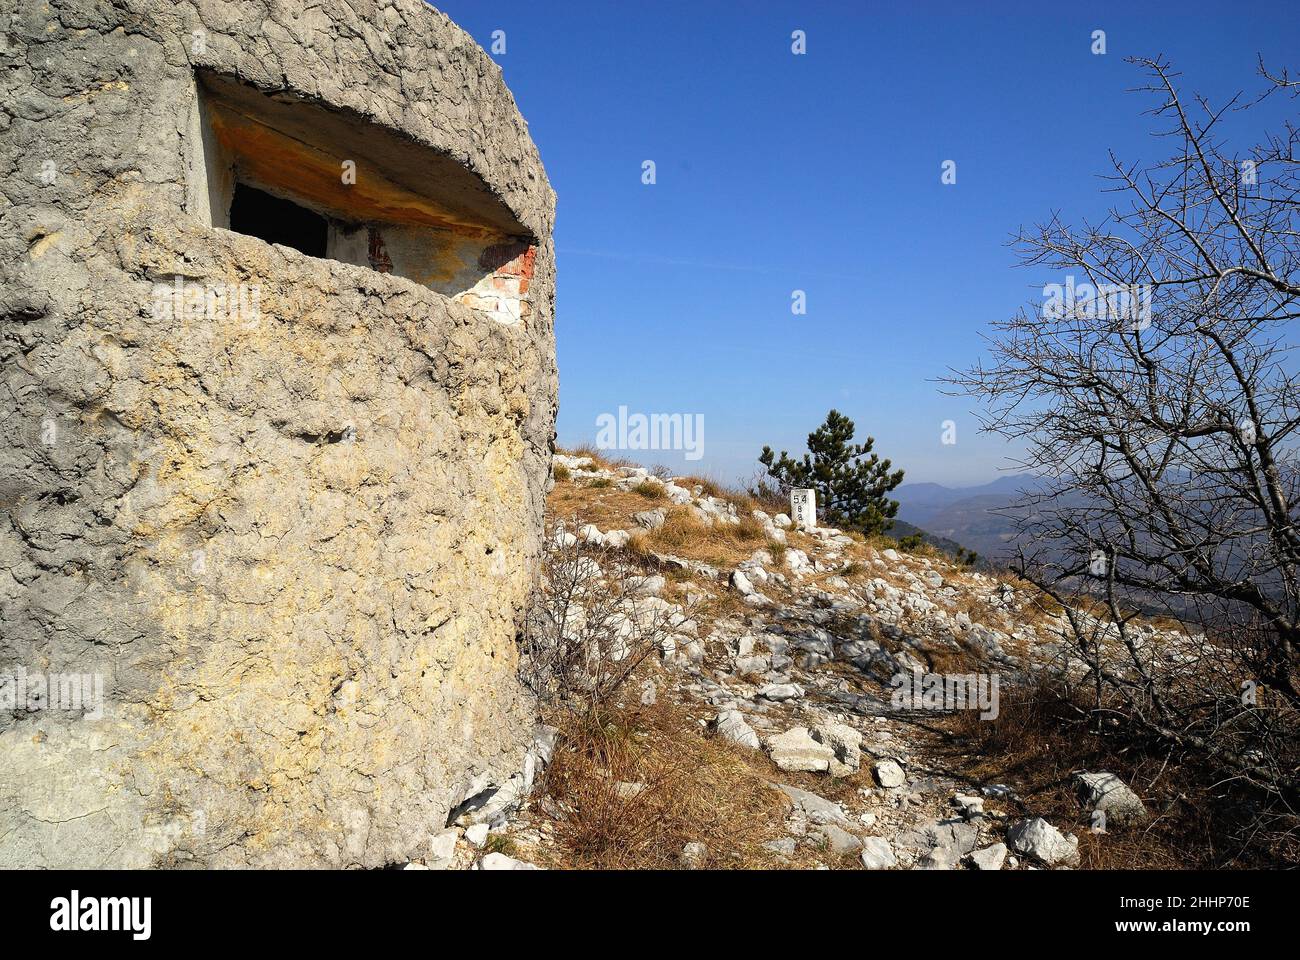 Der unzugängliche Kamm des Monte Sabotino (Sabotin) blickt über das enge Tal des Flusses Isonzo (Soca). Die dicht bepflanzten weißen Pfosten und der Bunker markieren die Grenze zwischen Italien und Slowenien und erinnern uns daran, dass in den Jahren des Kalten Krieges der Eiserne Vorhang entlang dieser Linie verlief. Stockfoto